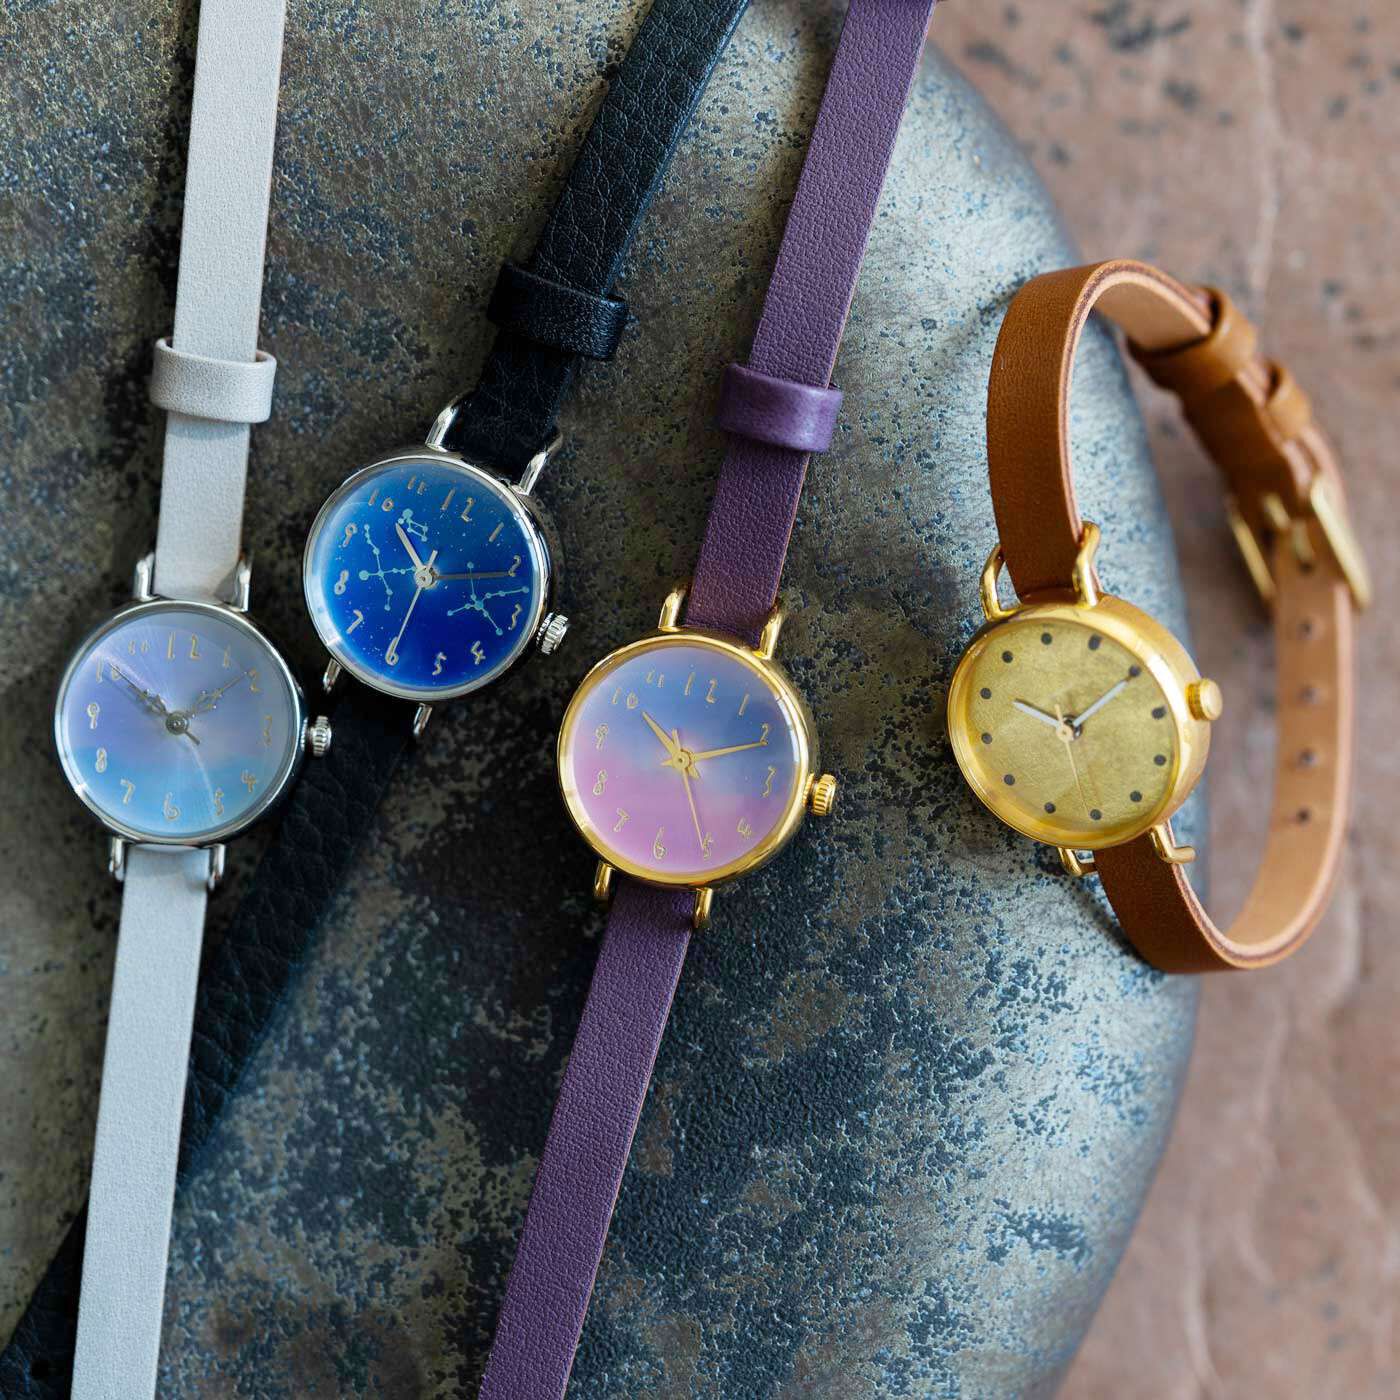 ＆Stories|金沢の時計職人が手掛けた　金色の月に見惚れる腕時計〈ライトブラウン〉|この夏登場する腕時計は、どれも洗練された美しい仕上がり。あなたにふさわしい逸品を見つけてくださいね。